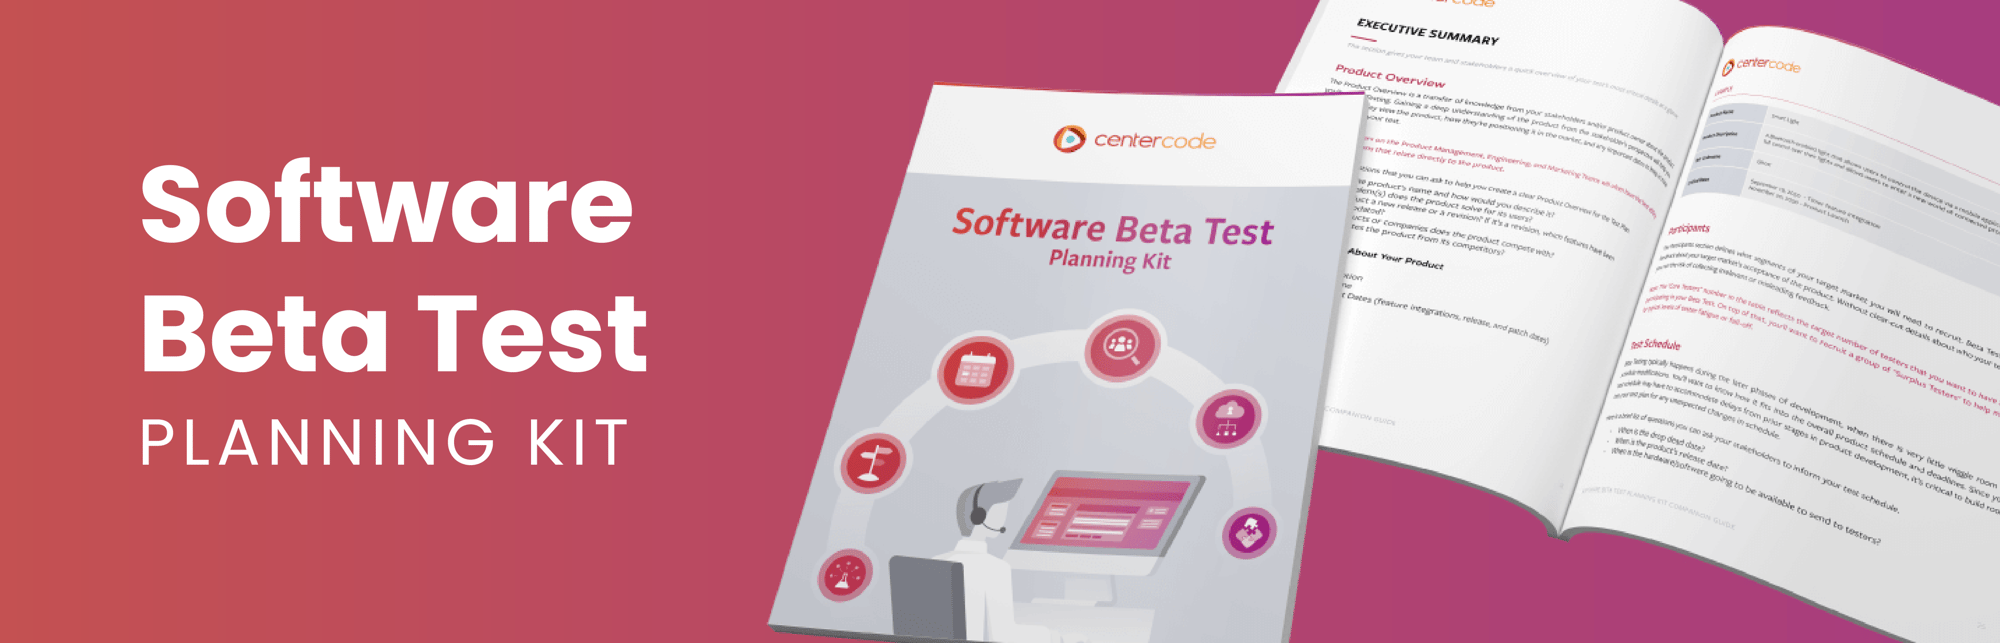 Software Beta Test Planning Kit